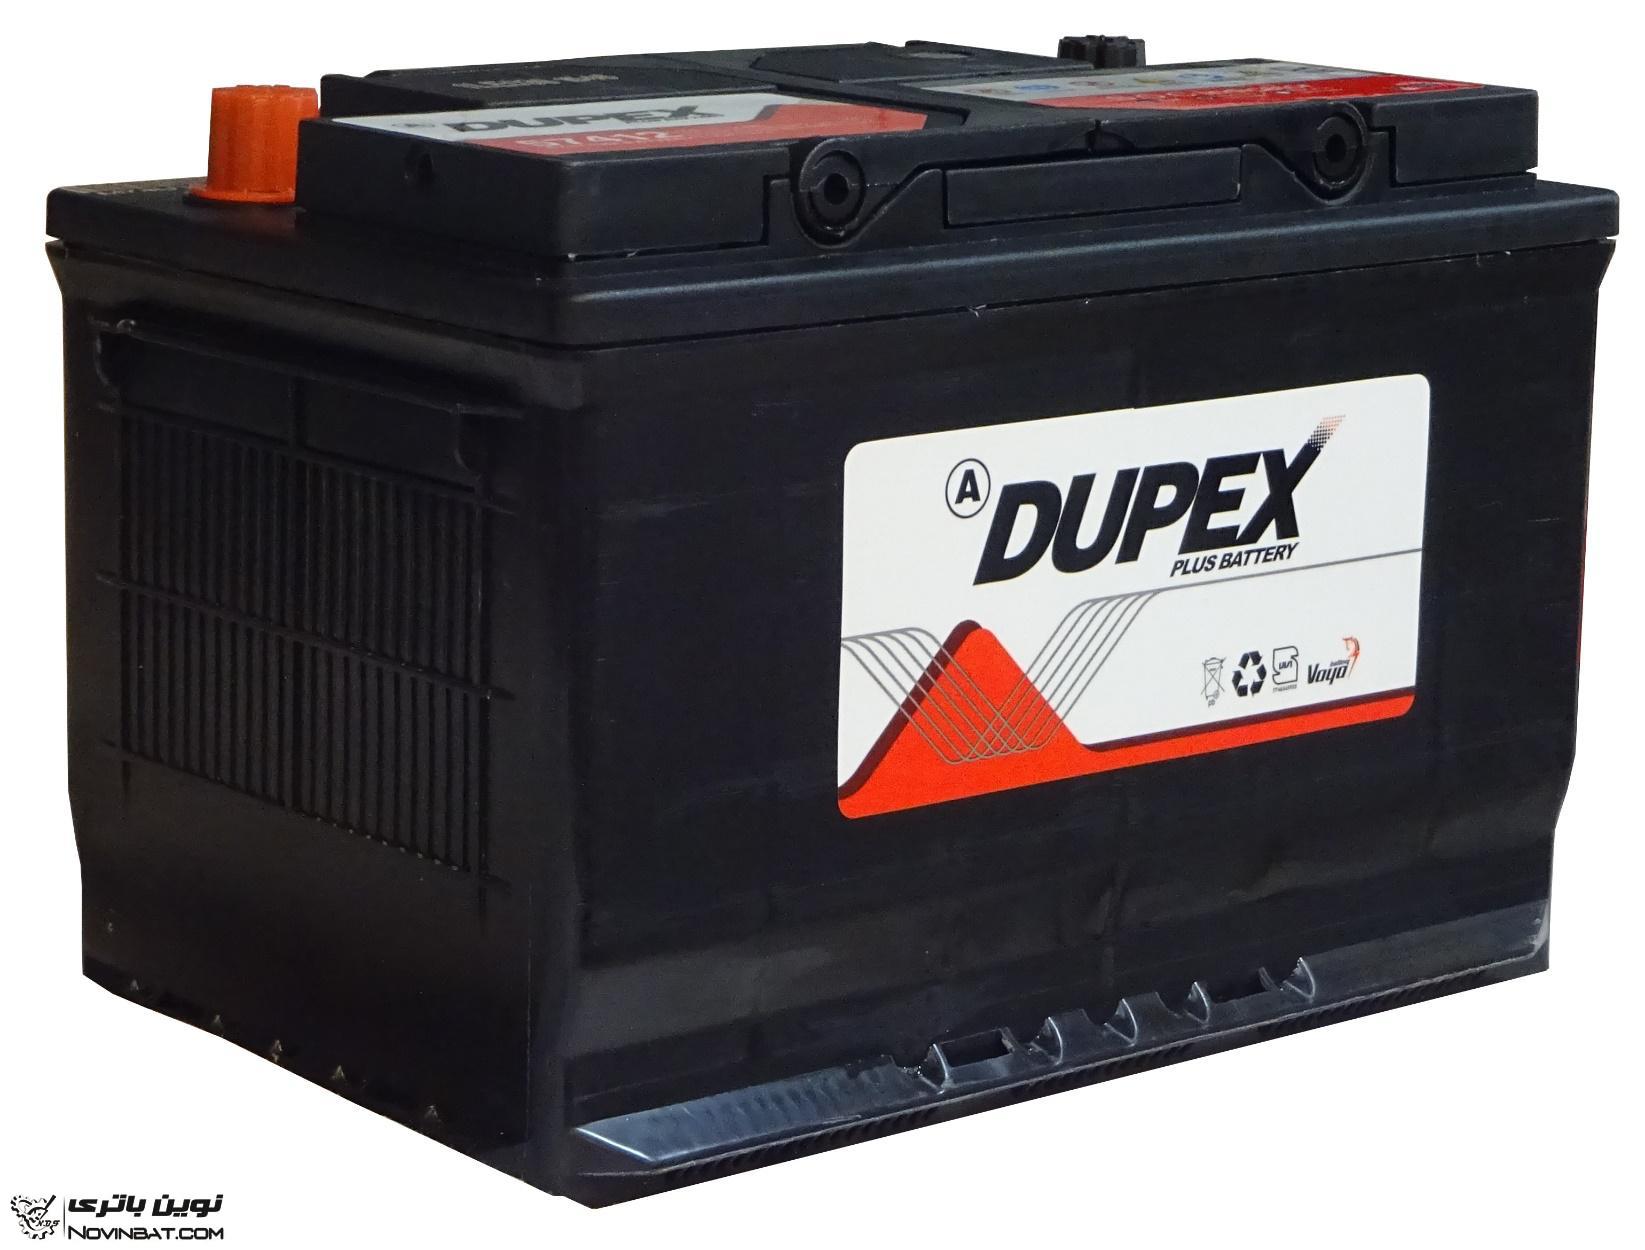 باتری دوپکس در مشهد - DUPEX BATTERY